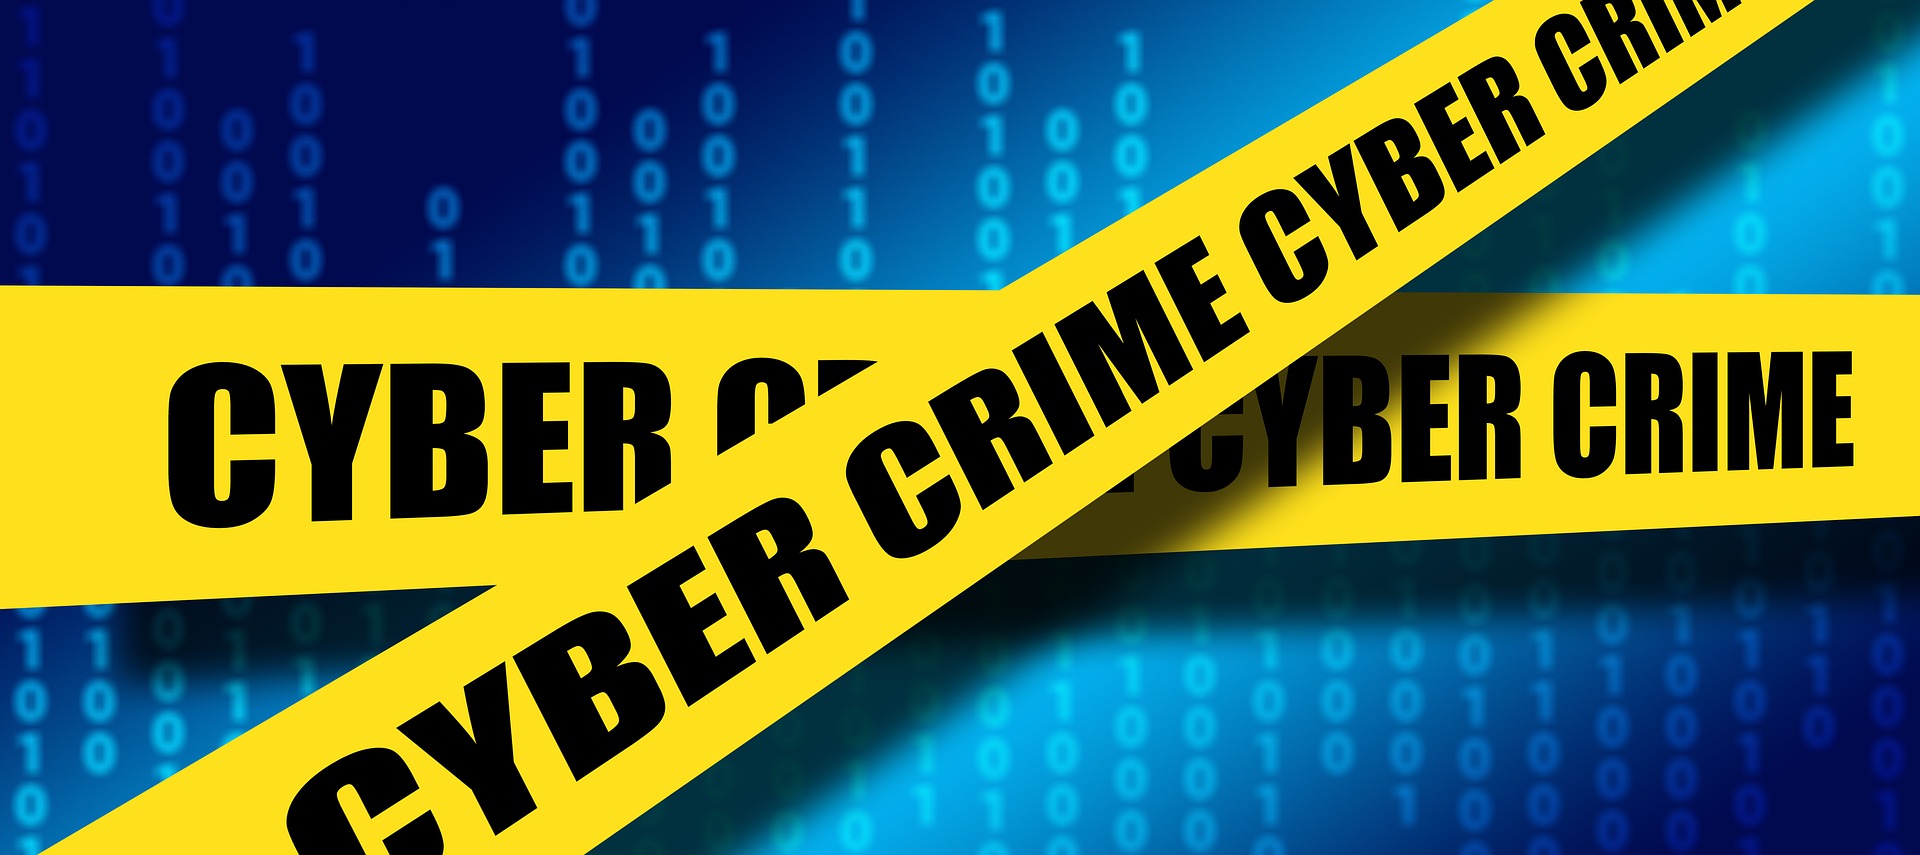 cyber crime tape